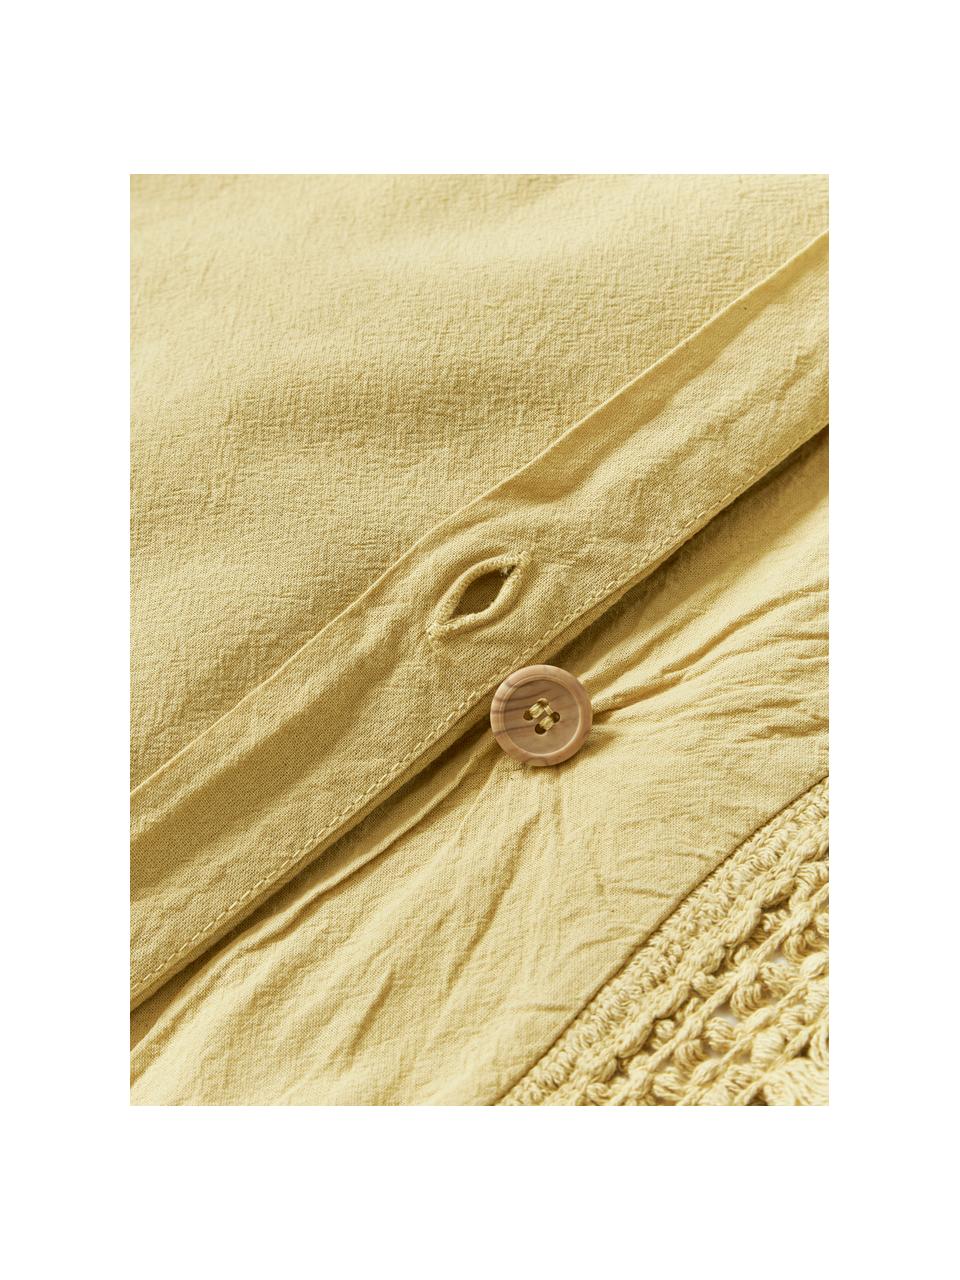 Baumwollperkal-Bettdeckenbezug Abra mit Fransen, Webart: Perkal Fadendichte 165 TC, Senfgelb, B 200 x L 200 cm